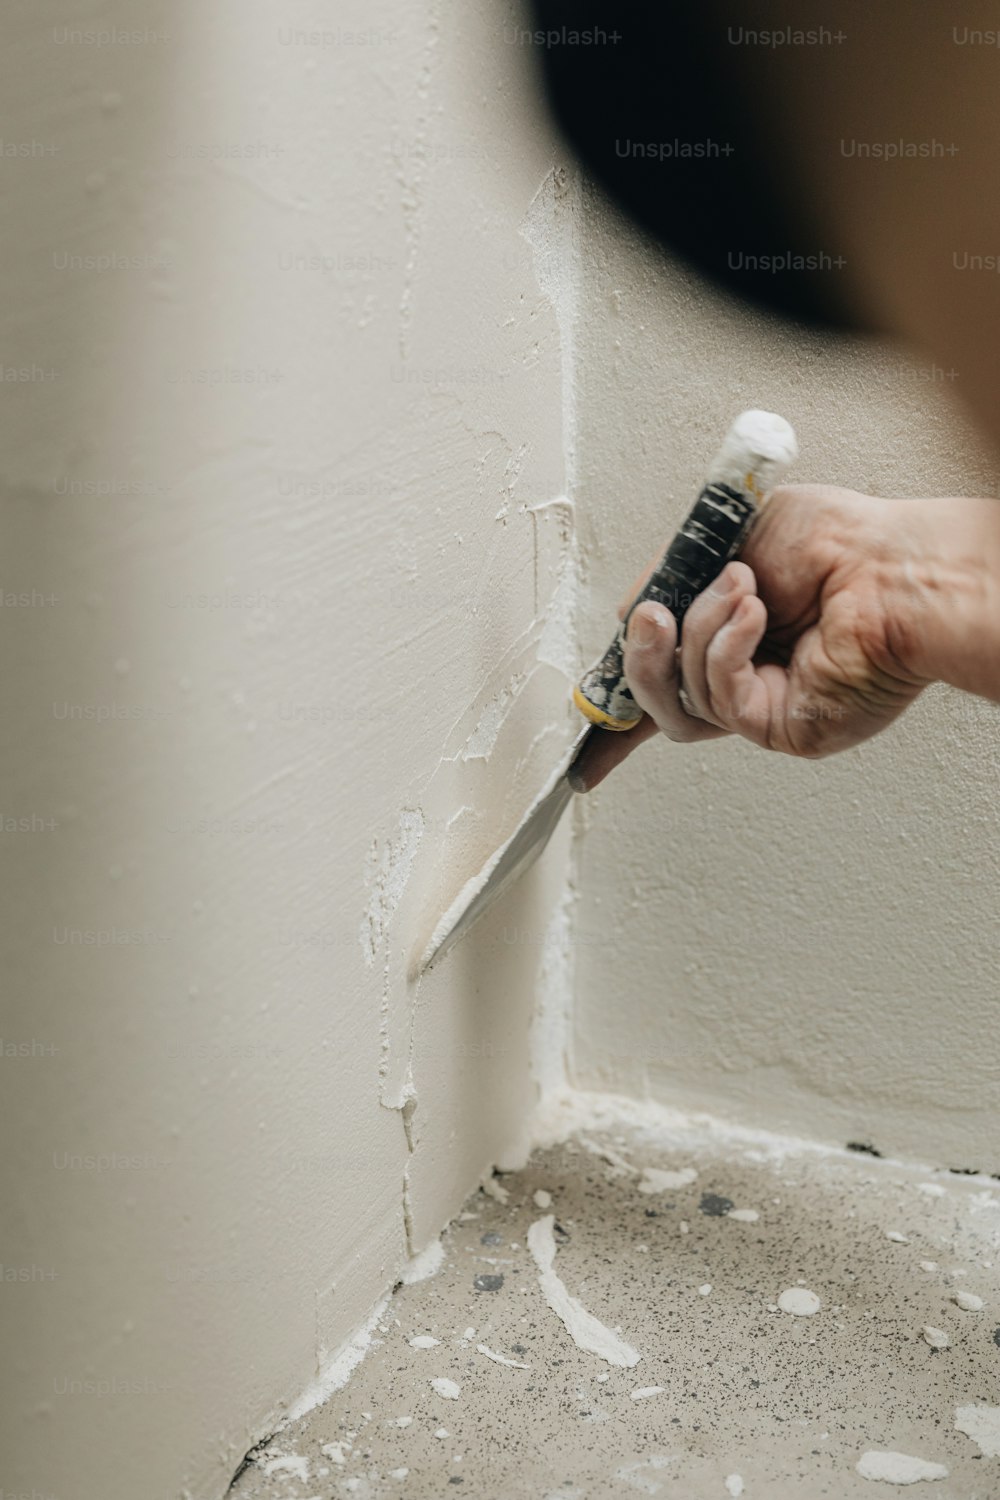 eine Person, die einen Pinsel benutzt, um eine Wand zu streichen